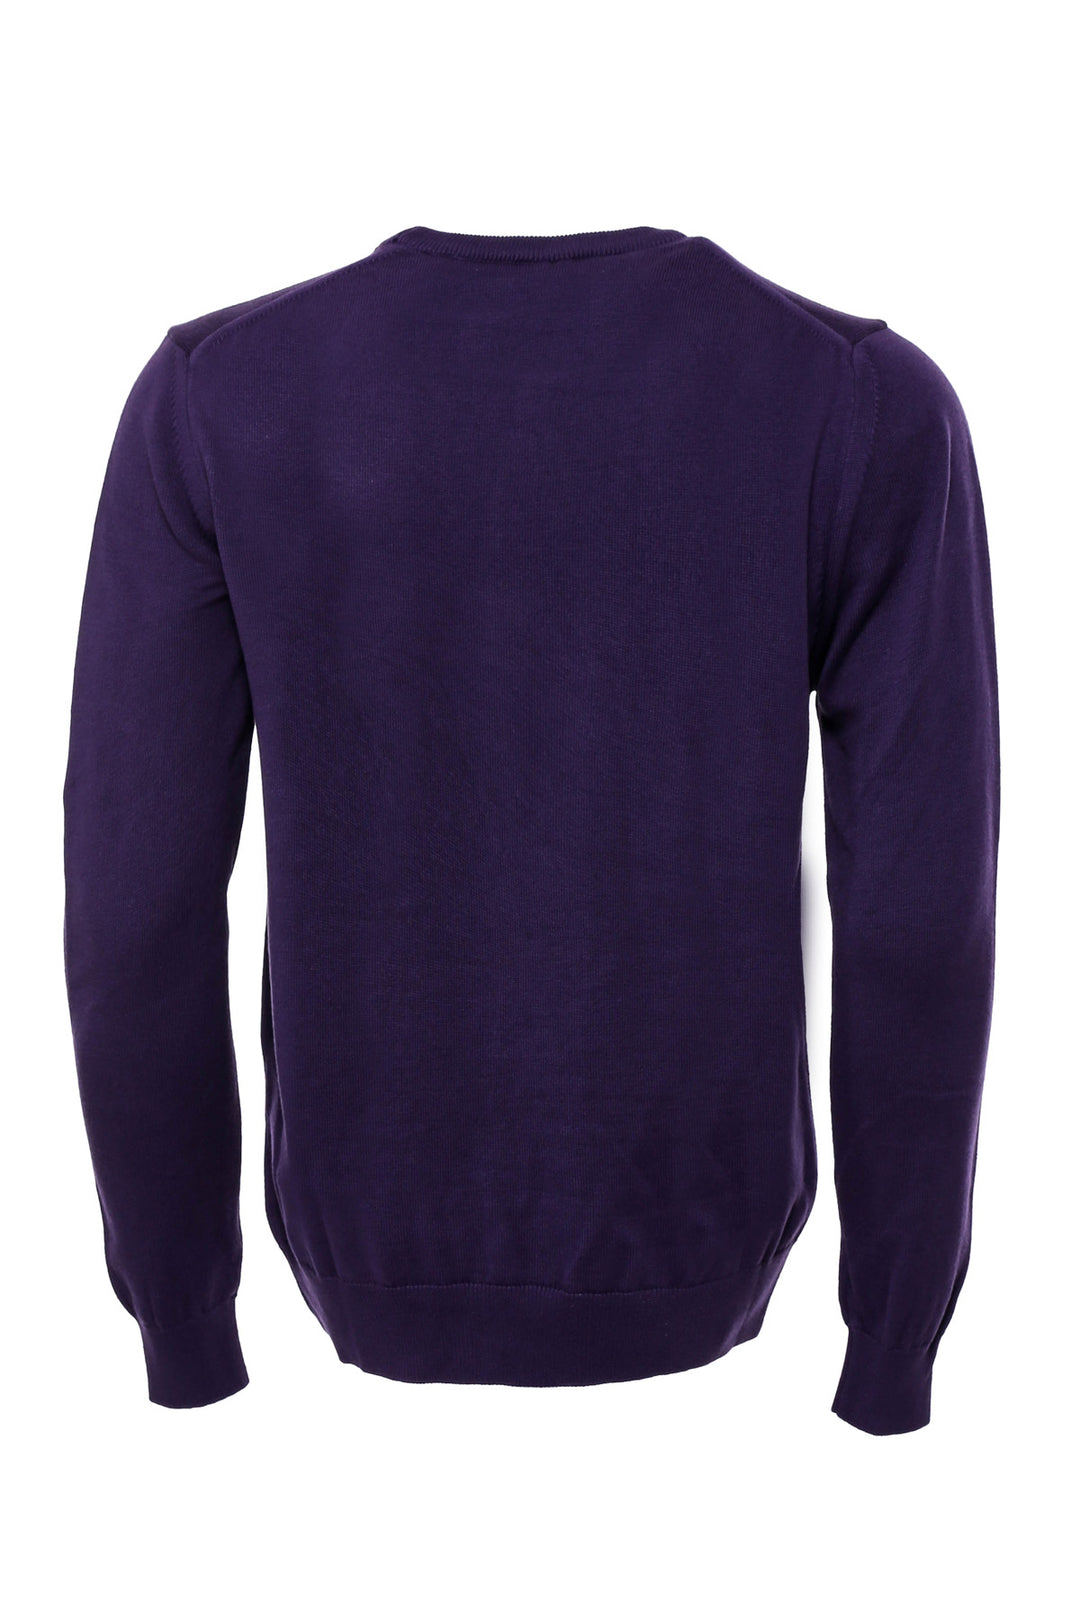 Crew Neck Long Sleeves Plain Purple Men Knitwear - Wessi